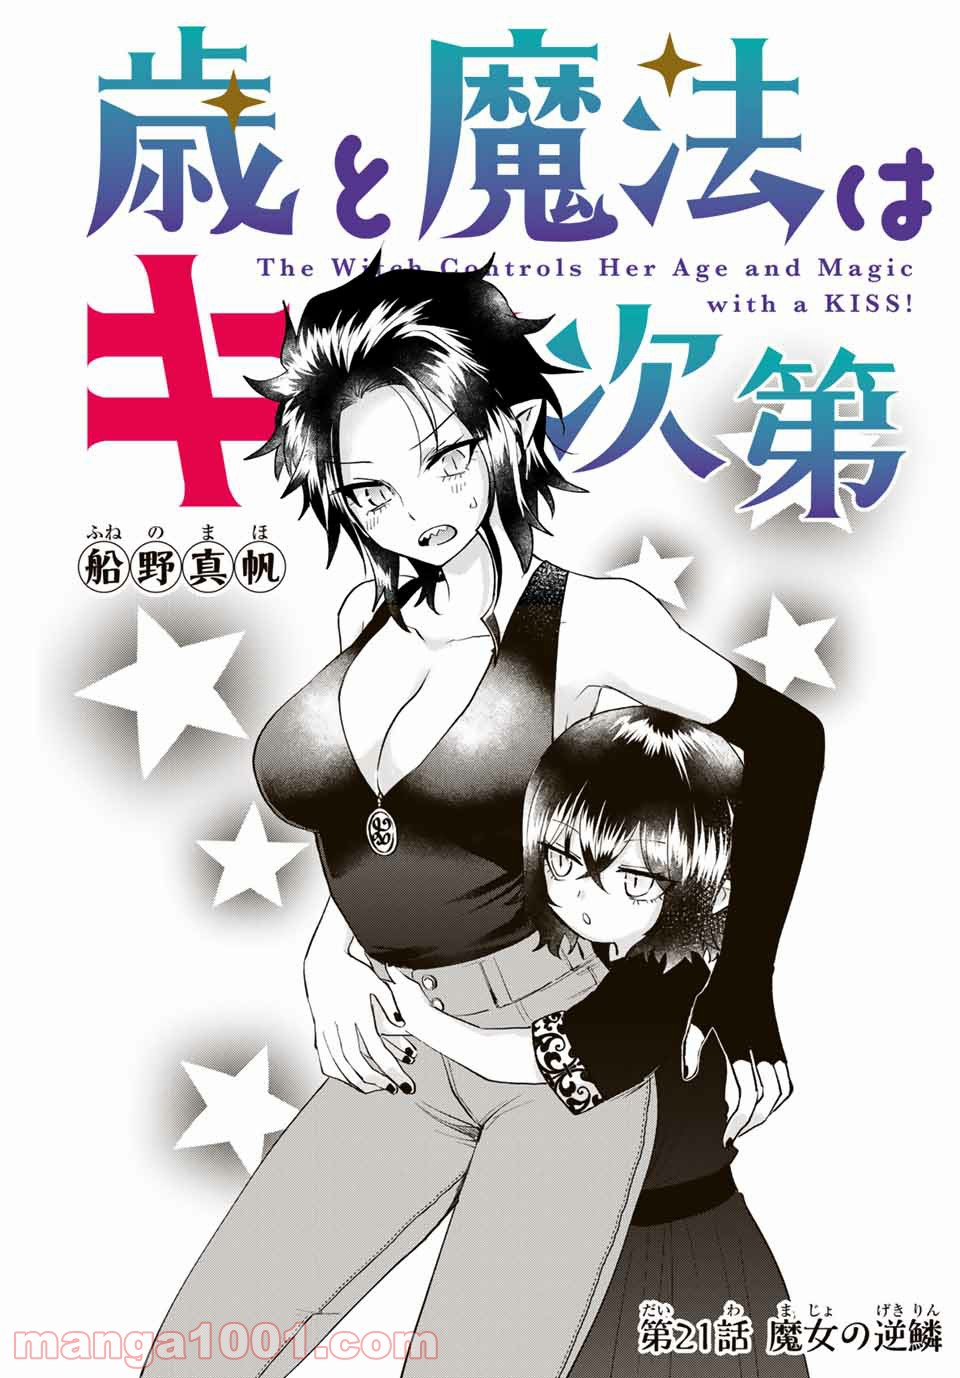 歳と魔法はキス次第 - Raw 【第21話】 - Manga1000.com